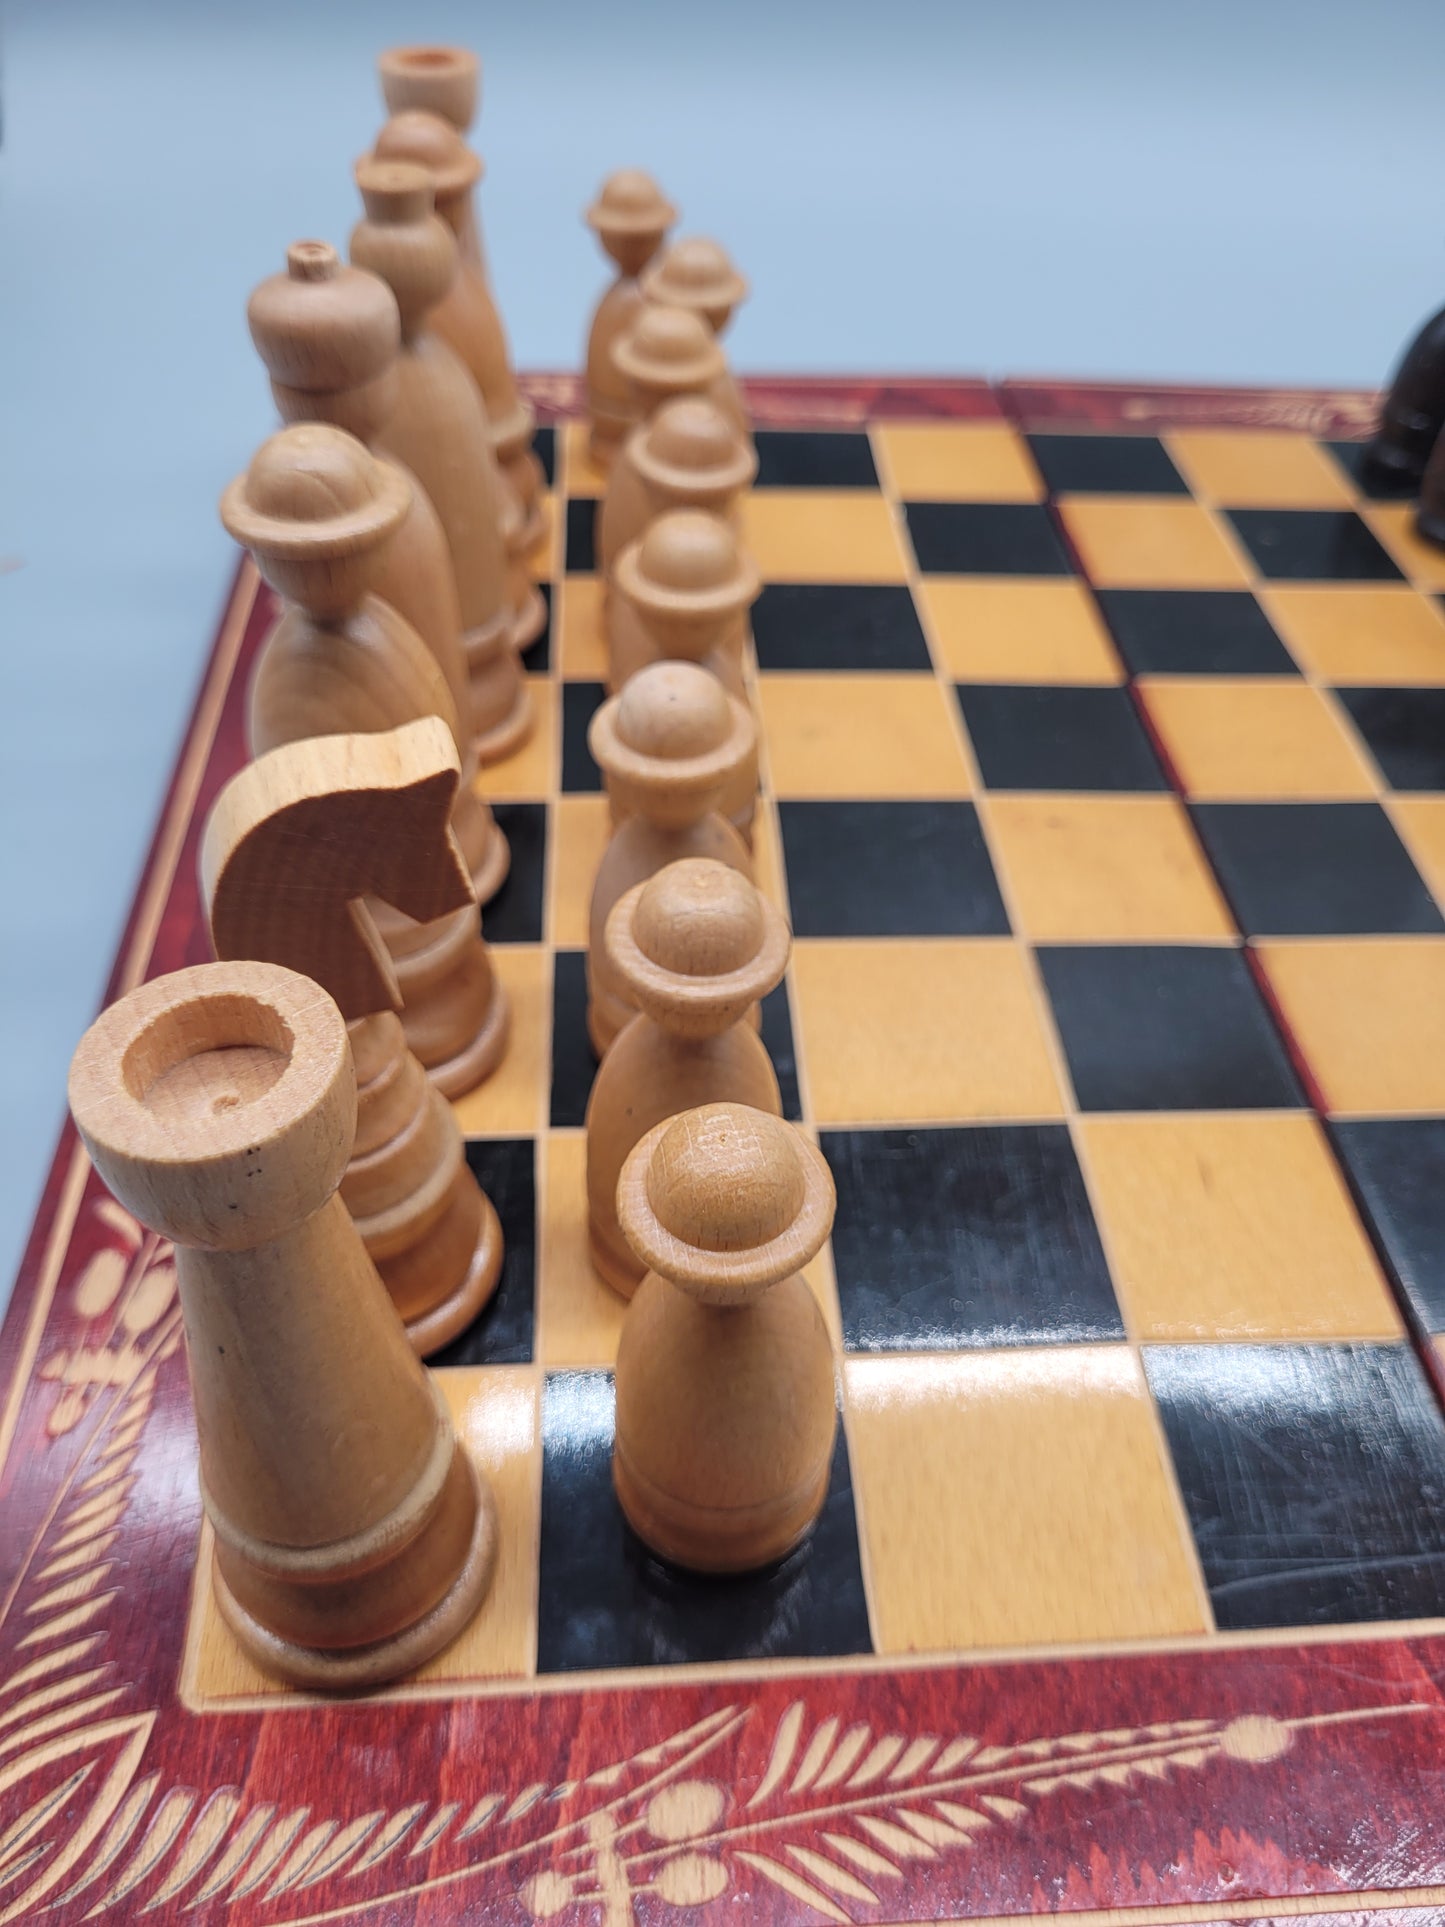 Retro Schachspiel 1950/-60er 32 Handgeschnitzte Figuren inkl. Brett